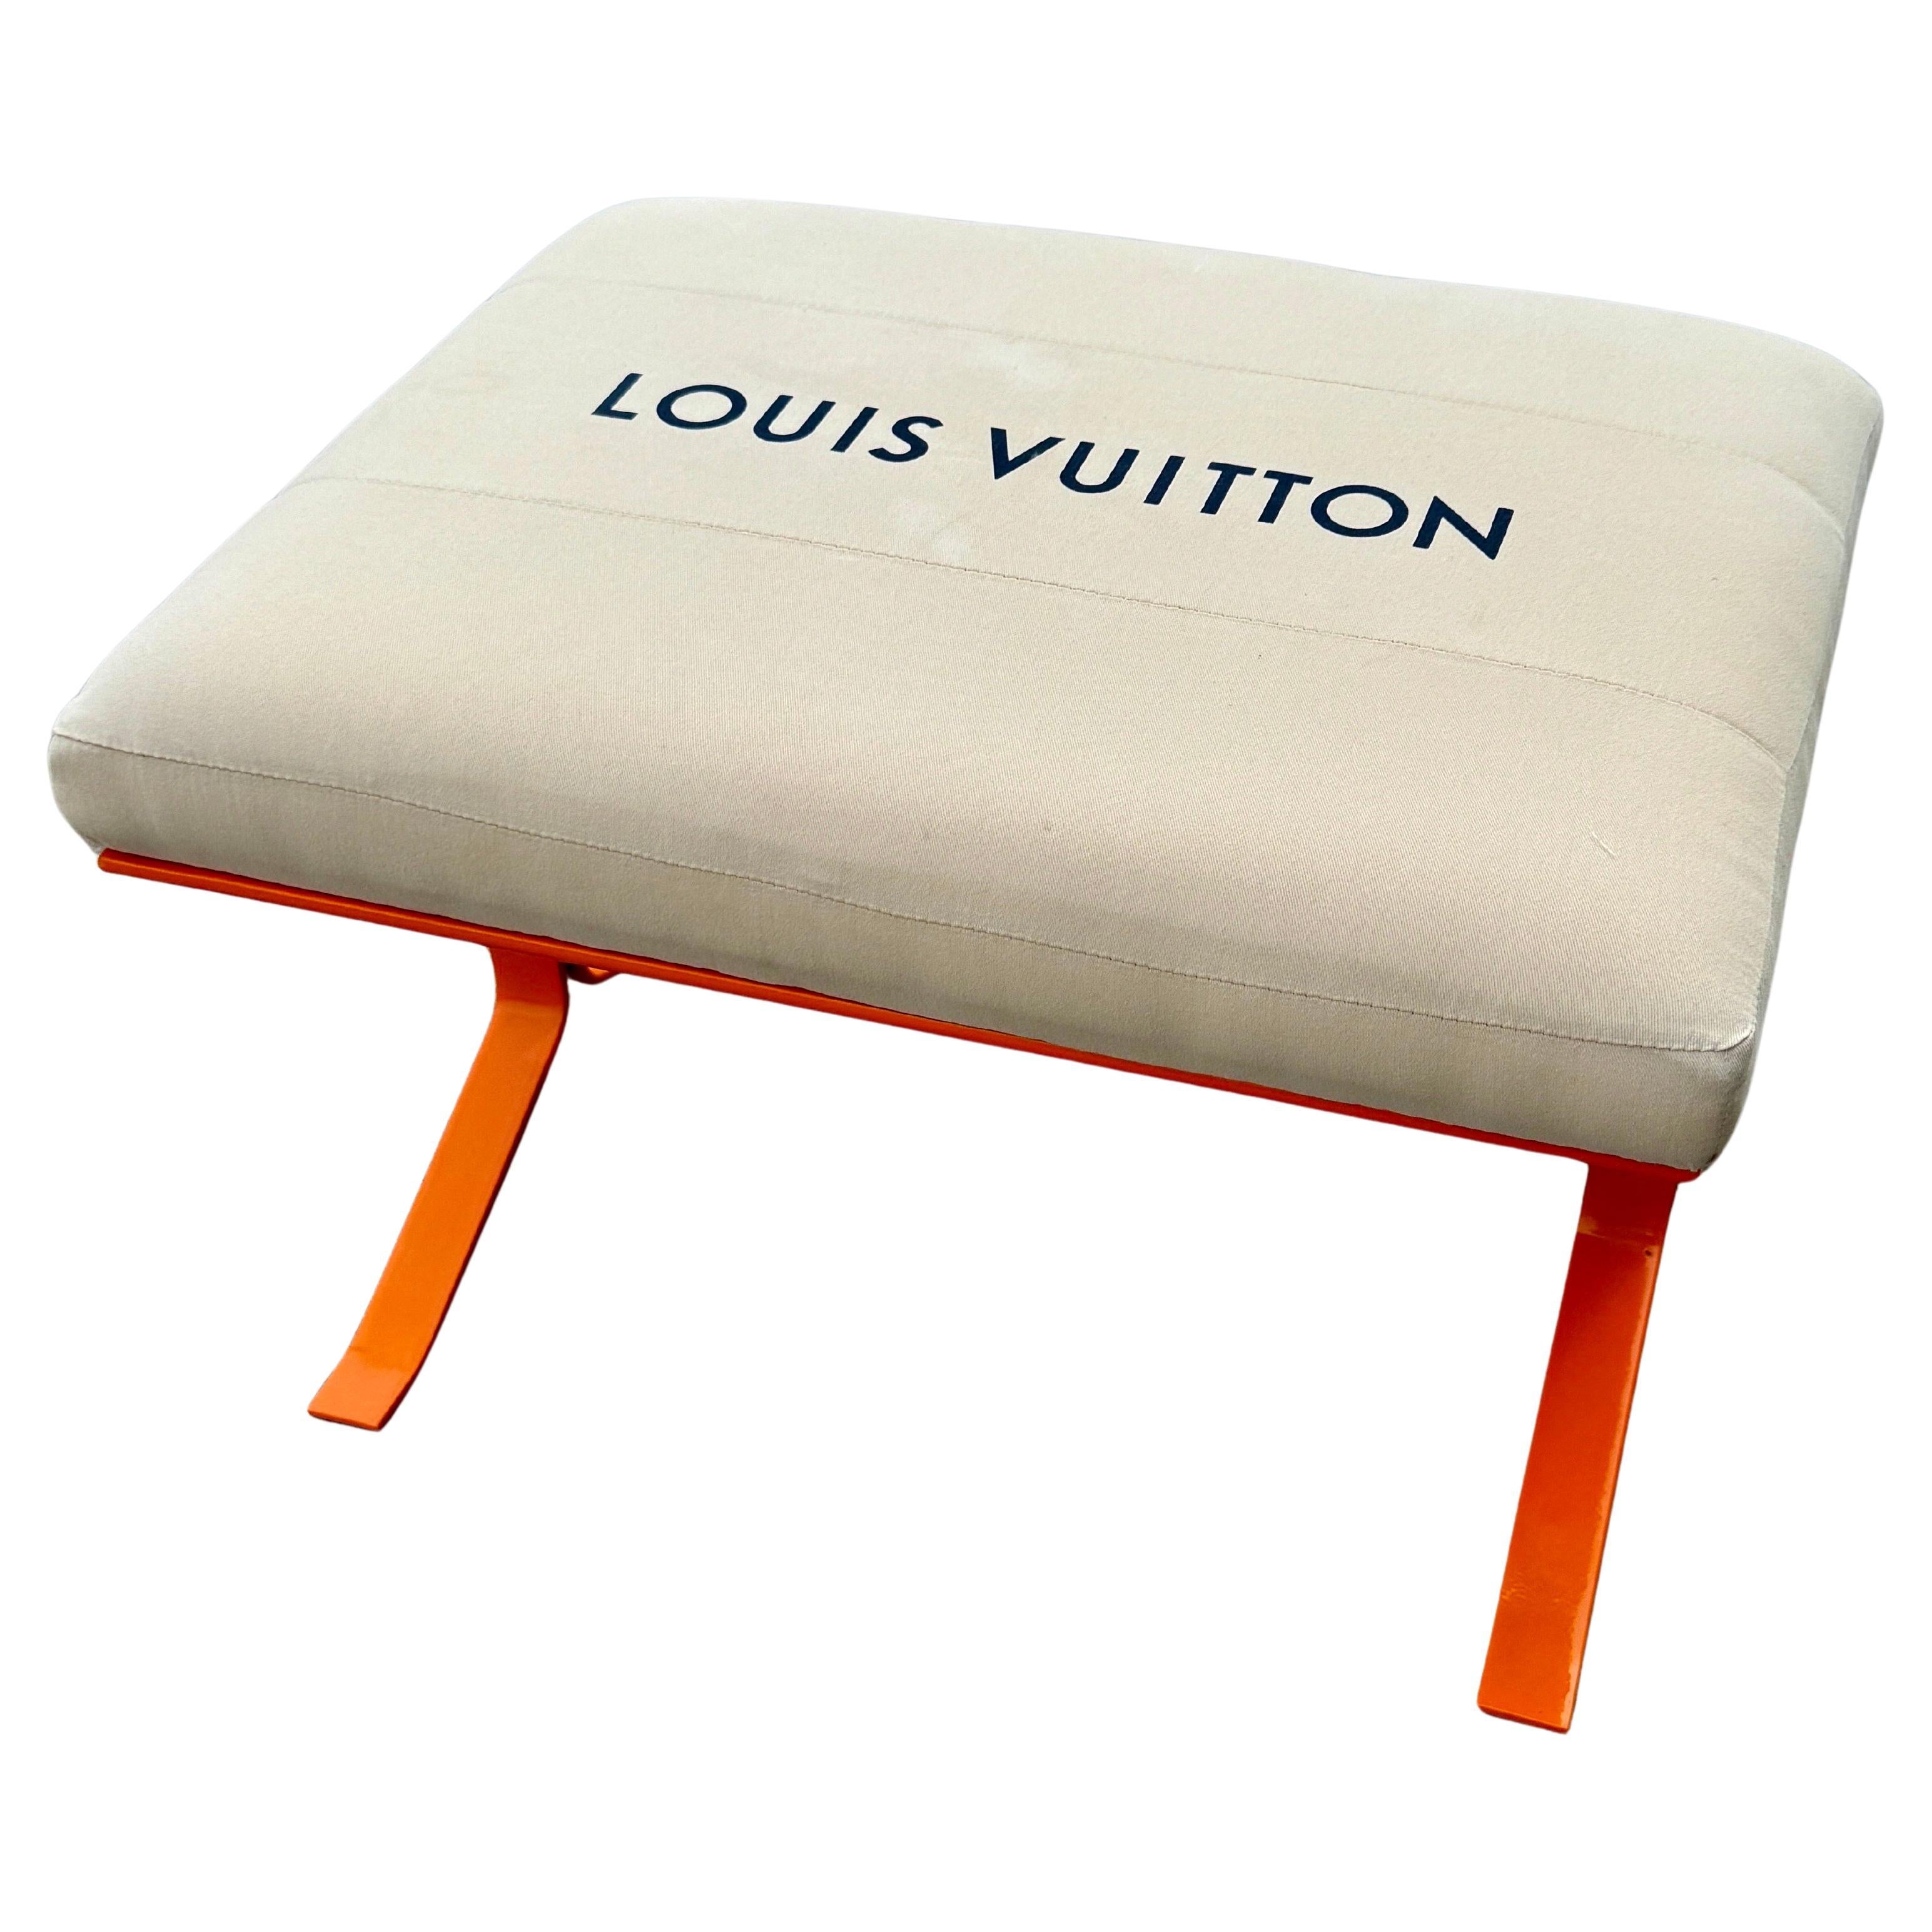 Moderne Chrombank aus der Jahrhundertmitte mit Louis Vuitton-Stoff

Design und Zweck beschreiben am besten diese einzigartige, maßgeschneiderte Bank. Dieses Stück besteht aus authentischem Louis Vuitton MATERIAL auf einer sehr robusten,